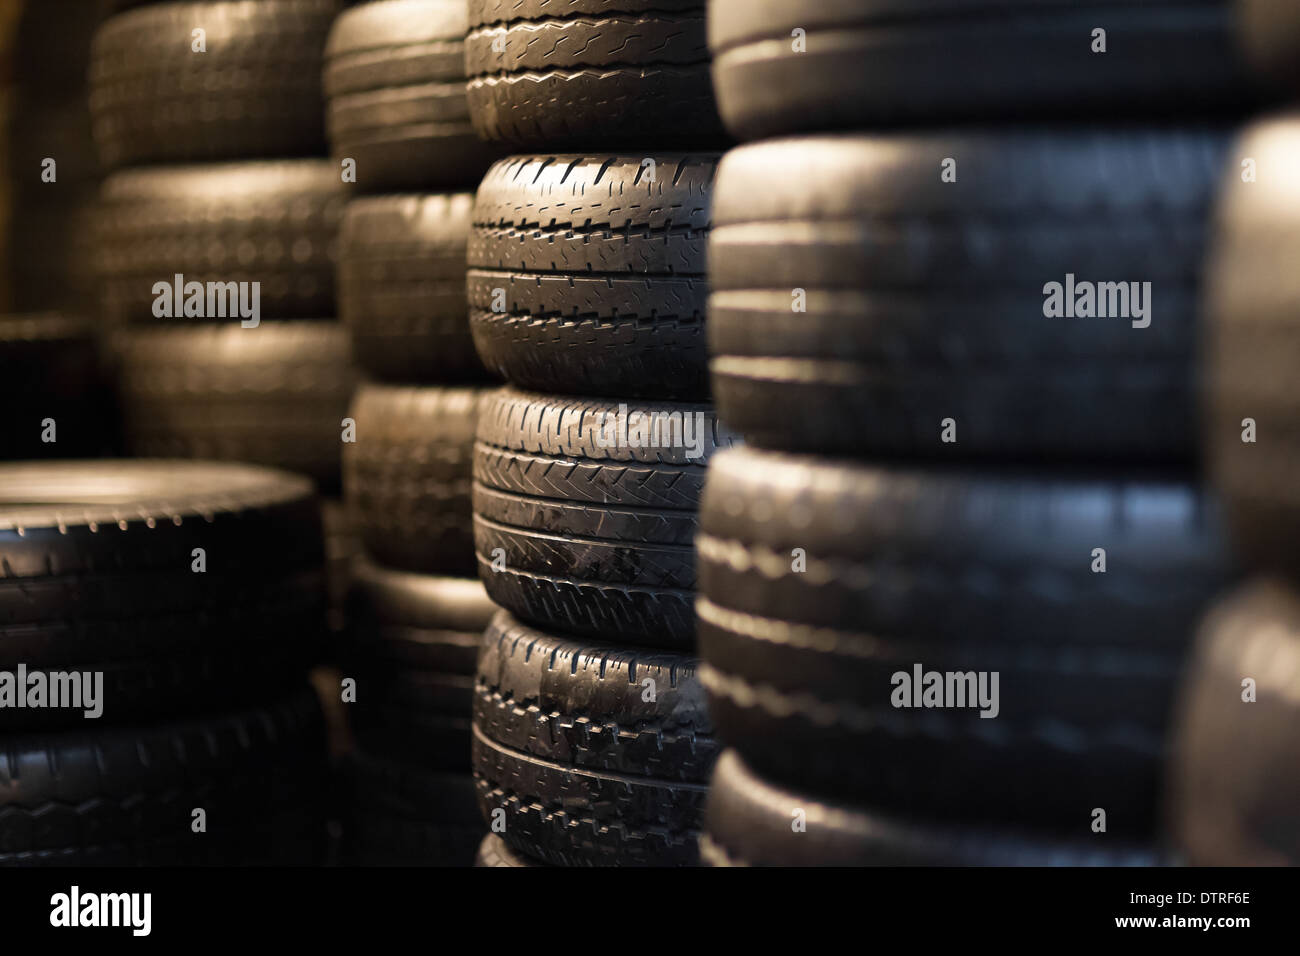 Stapel von Pkw-Reifen in einem Distributionszentrum, künstliche Beleuchtung Stockfoto